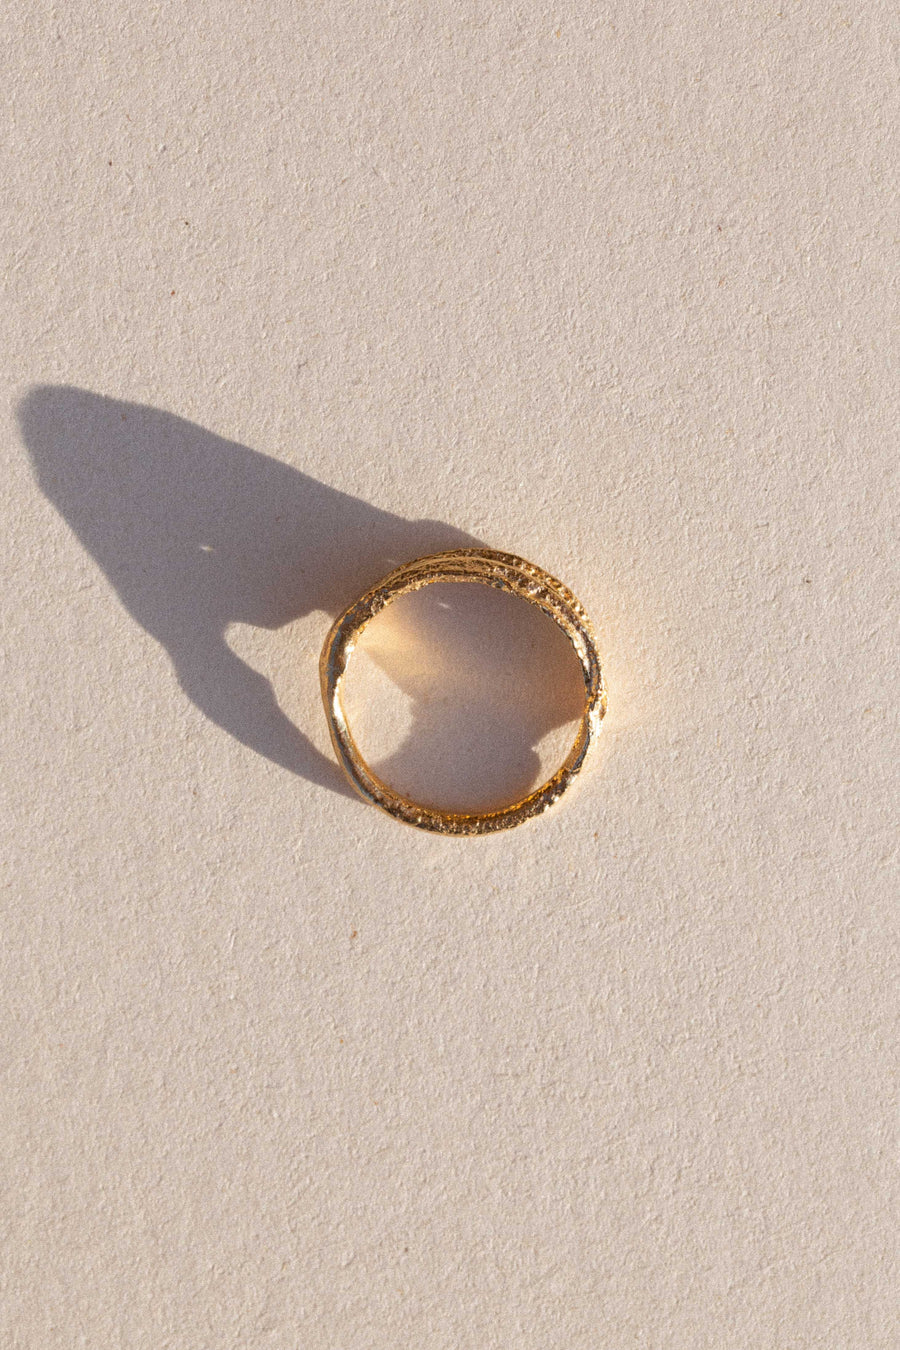 SAMSA Golden Desiccated Ring